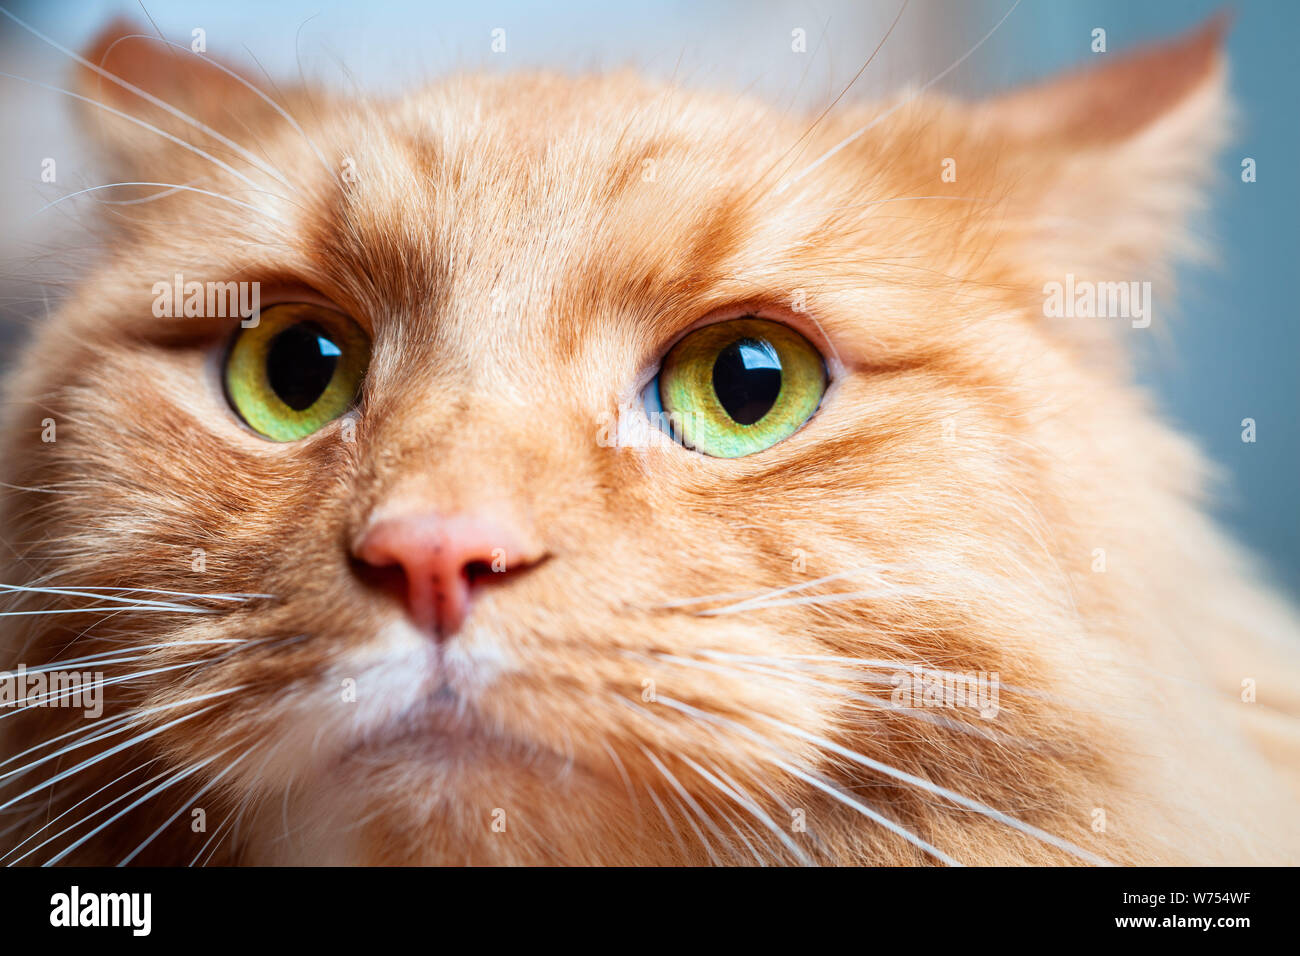 Chat de gingembre avec de beaux yeux verts - extreme closeup portrait Banque D'Images